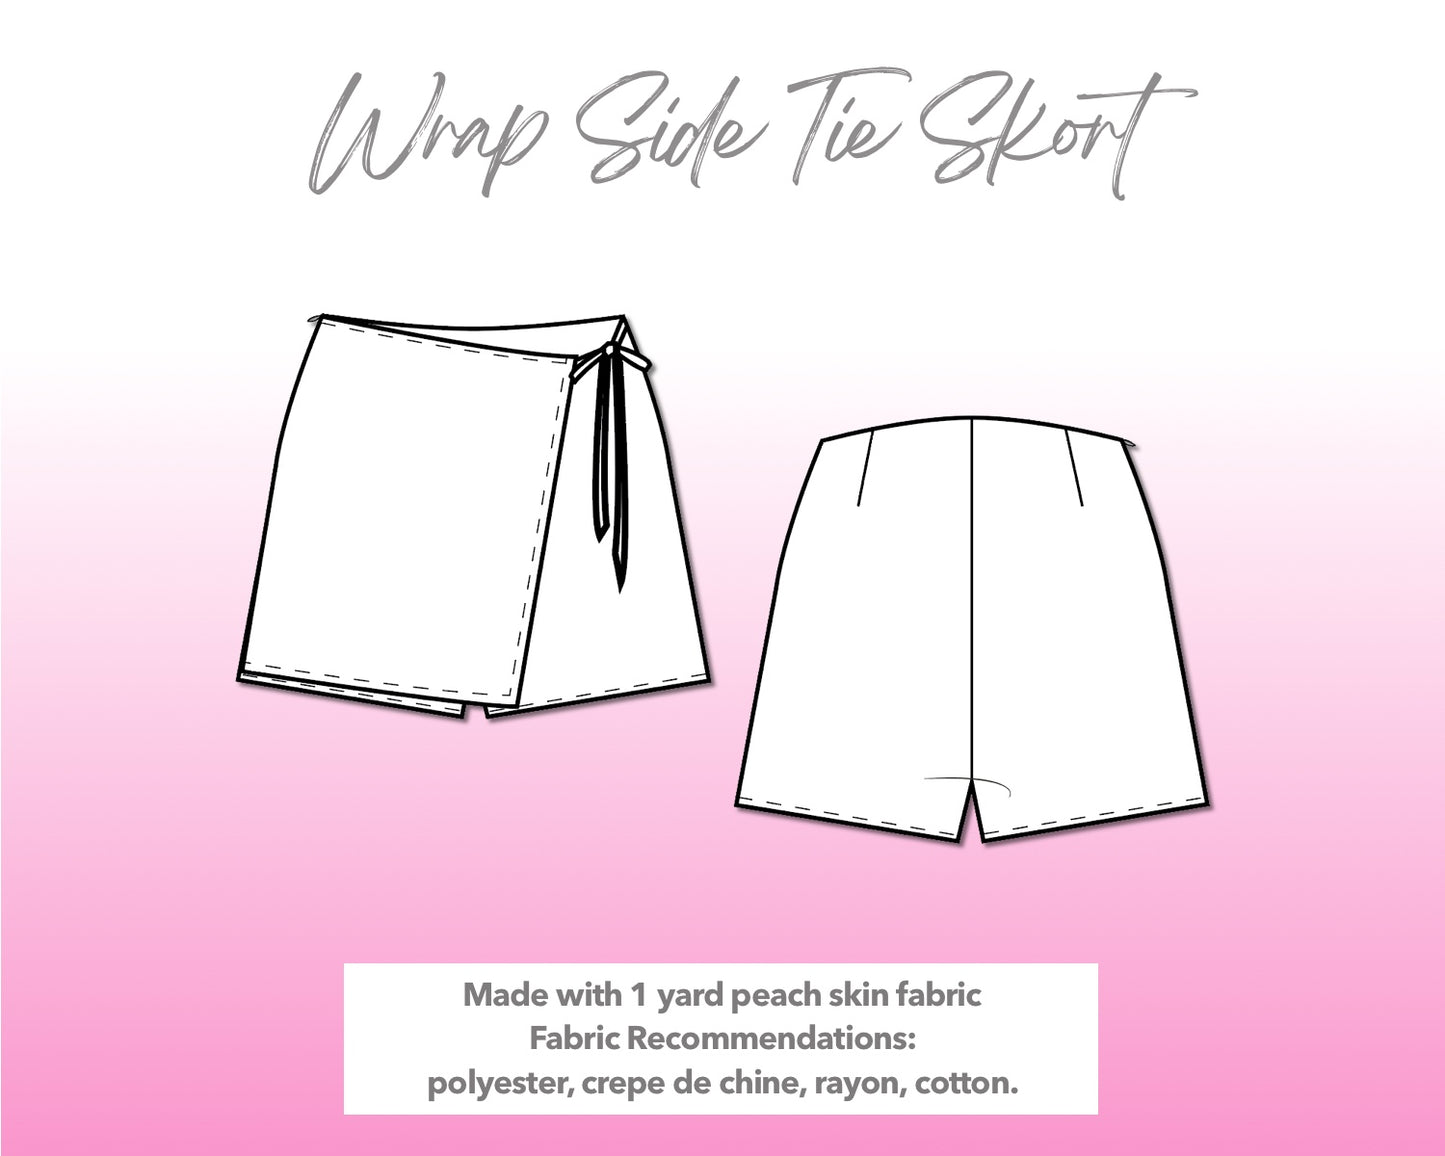 Illustration and detailed description for Wrap Side Tie Skort sewing pattern.